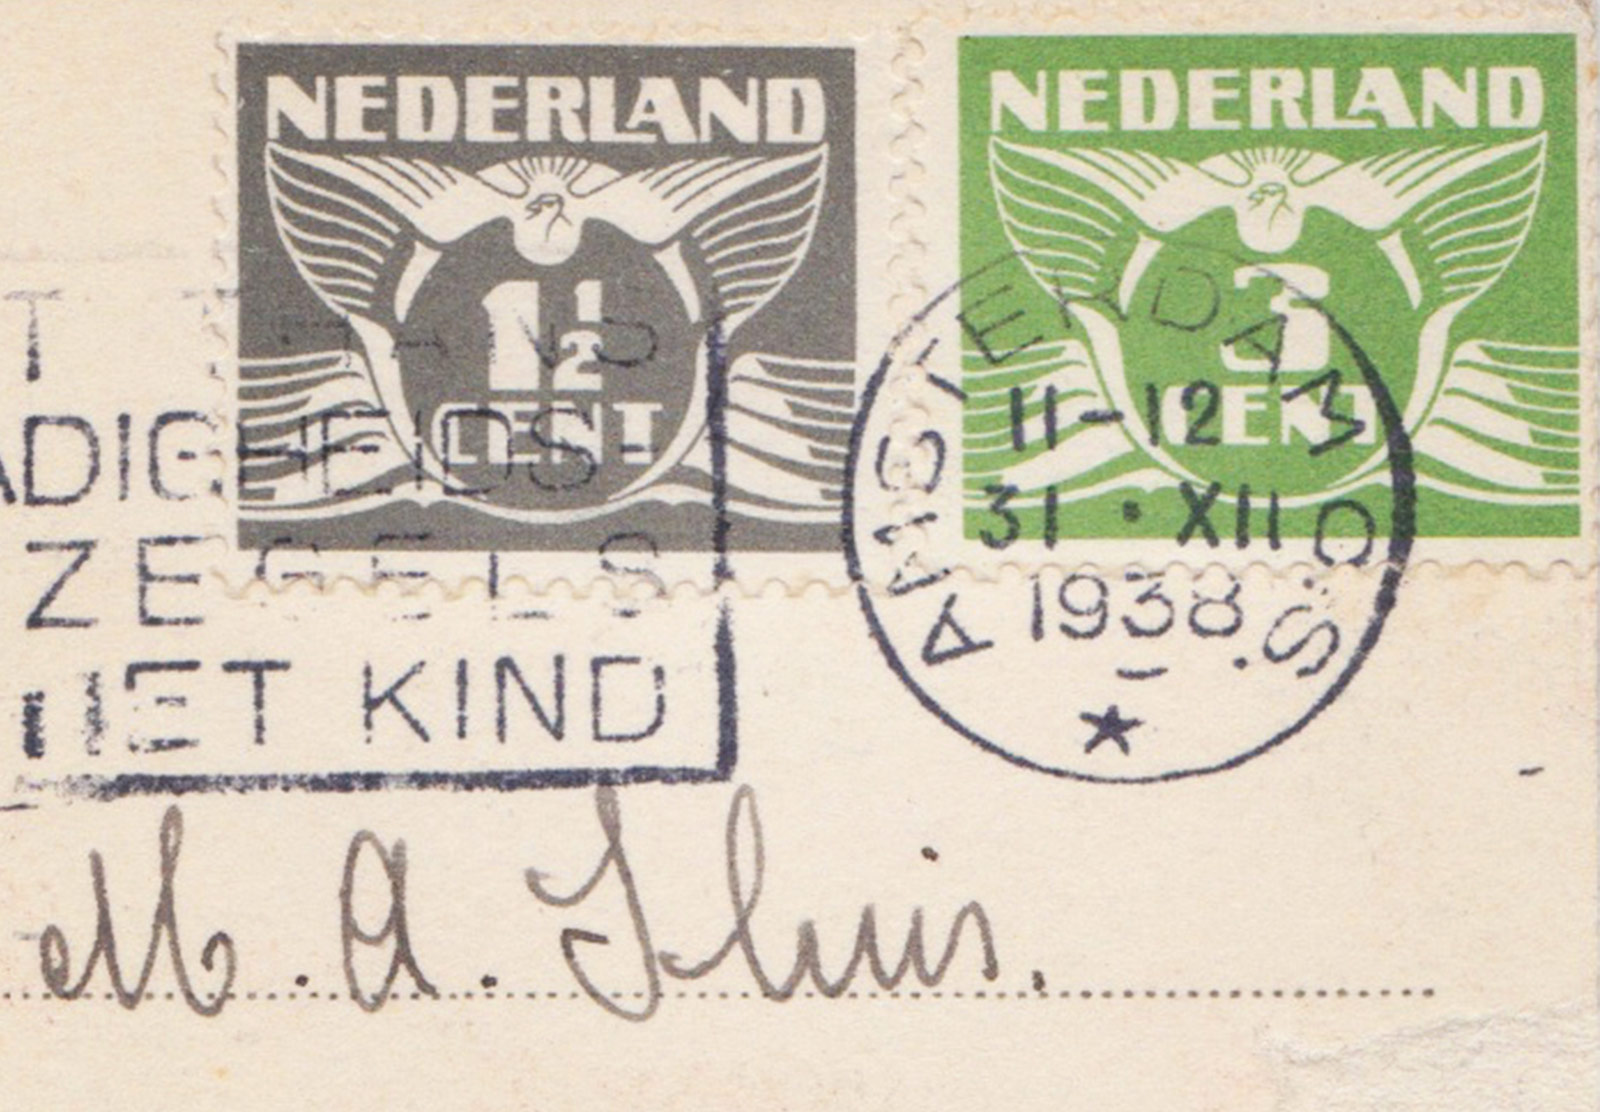 White bird on green stamp